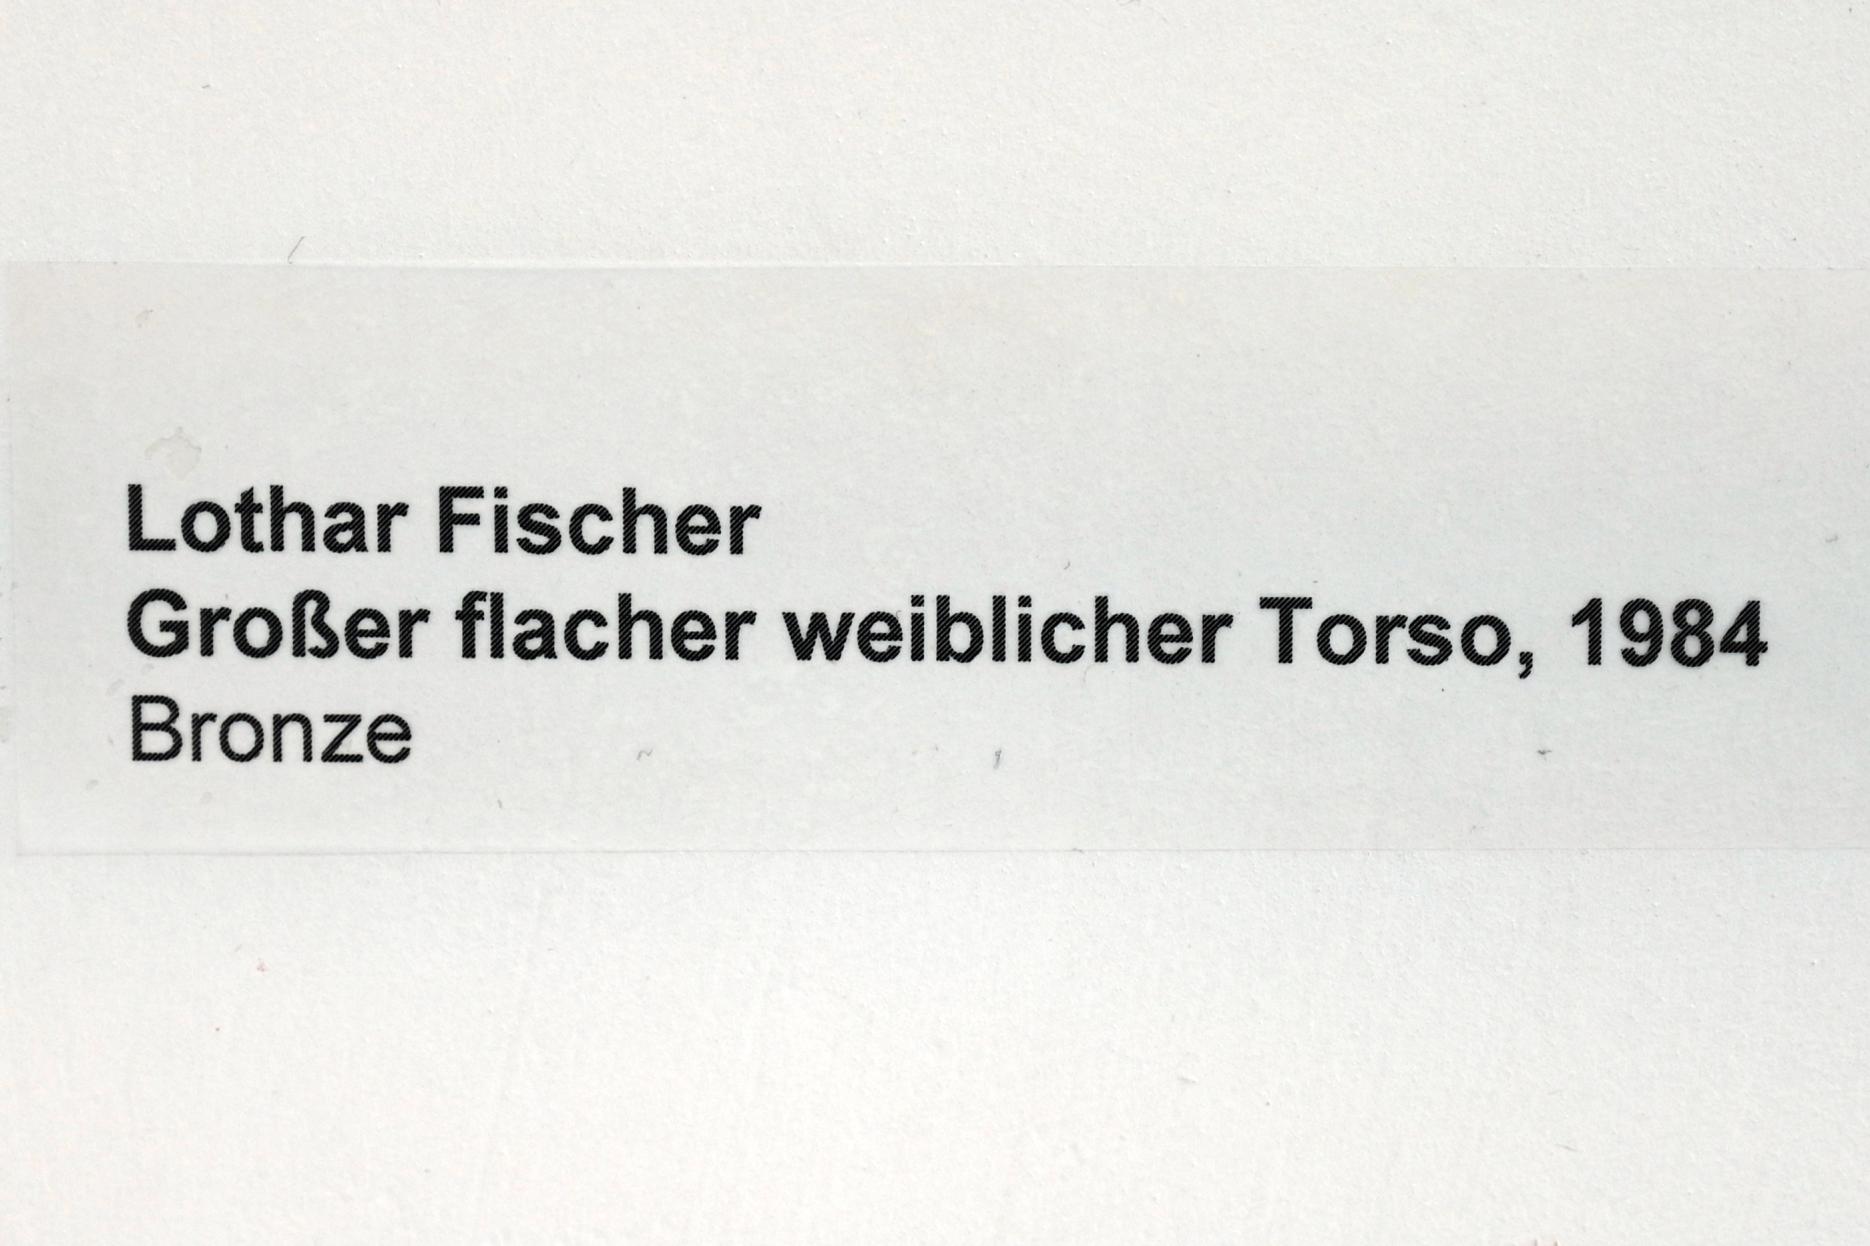 Lothar Fischer (1959–2004), Großer flacher weiblicher Torso, Neumarkt in der Oberpfalz, Museum Lothar Fischer, Obergeschoß Raum 5, 1984, Bild 5/5